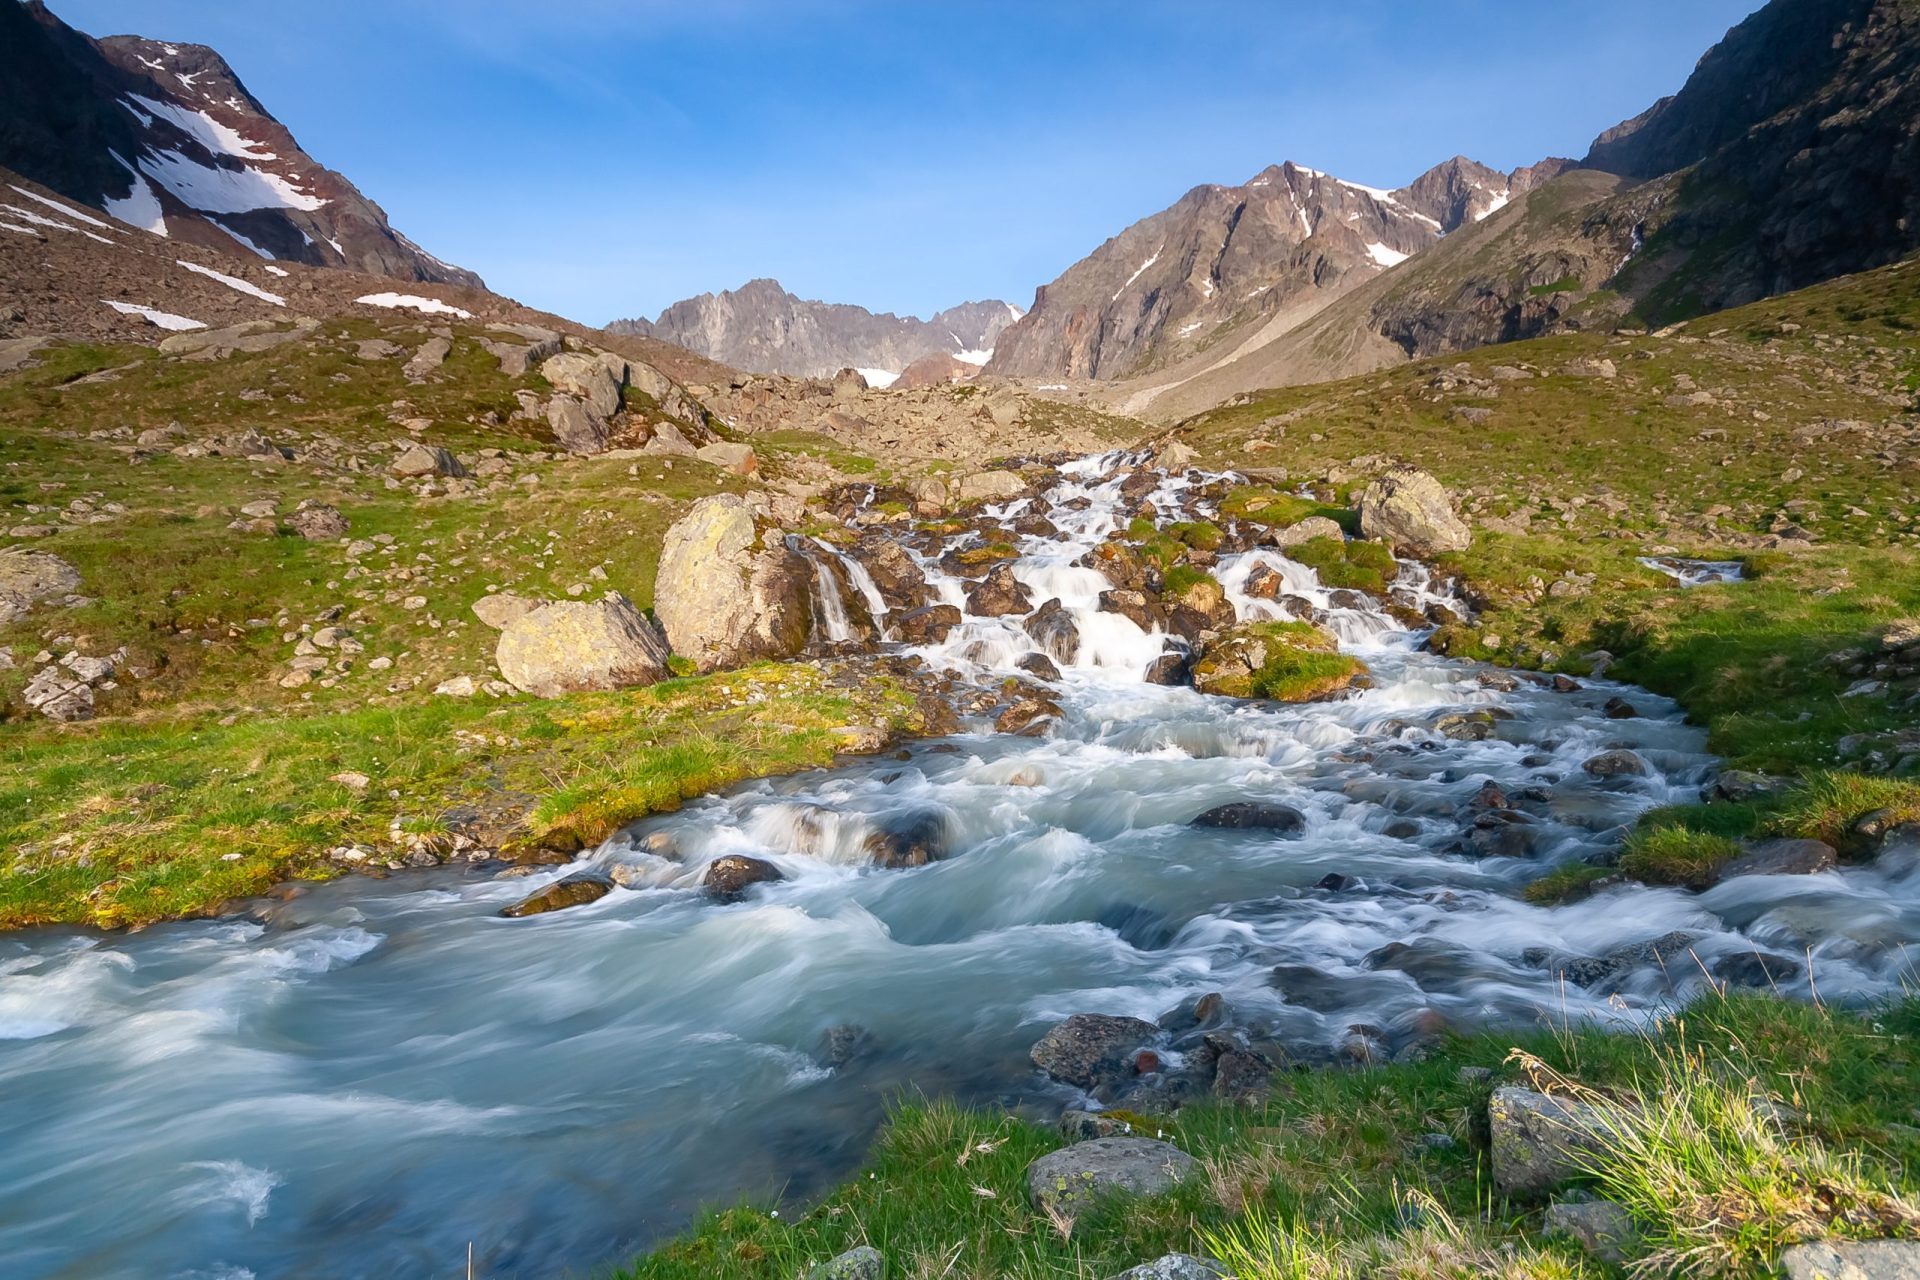 Ruscello fresco nel fiume proveniente dai ghiacciai che risalgono la valle vicino alla Neue Regensburger huette, Alpi dello Stubai Tirolo, Austria